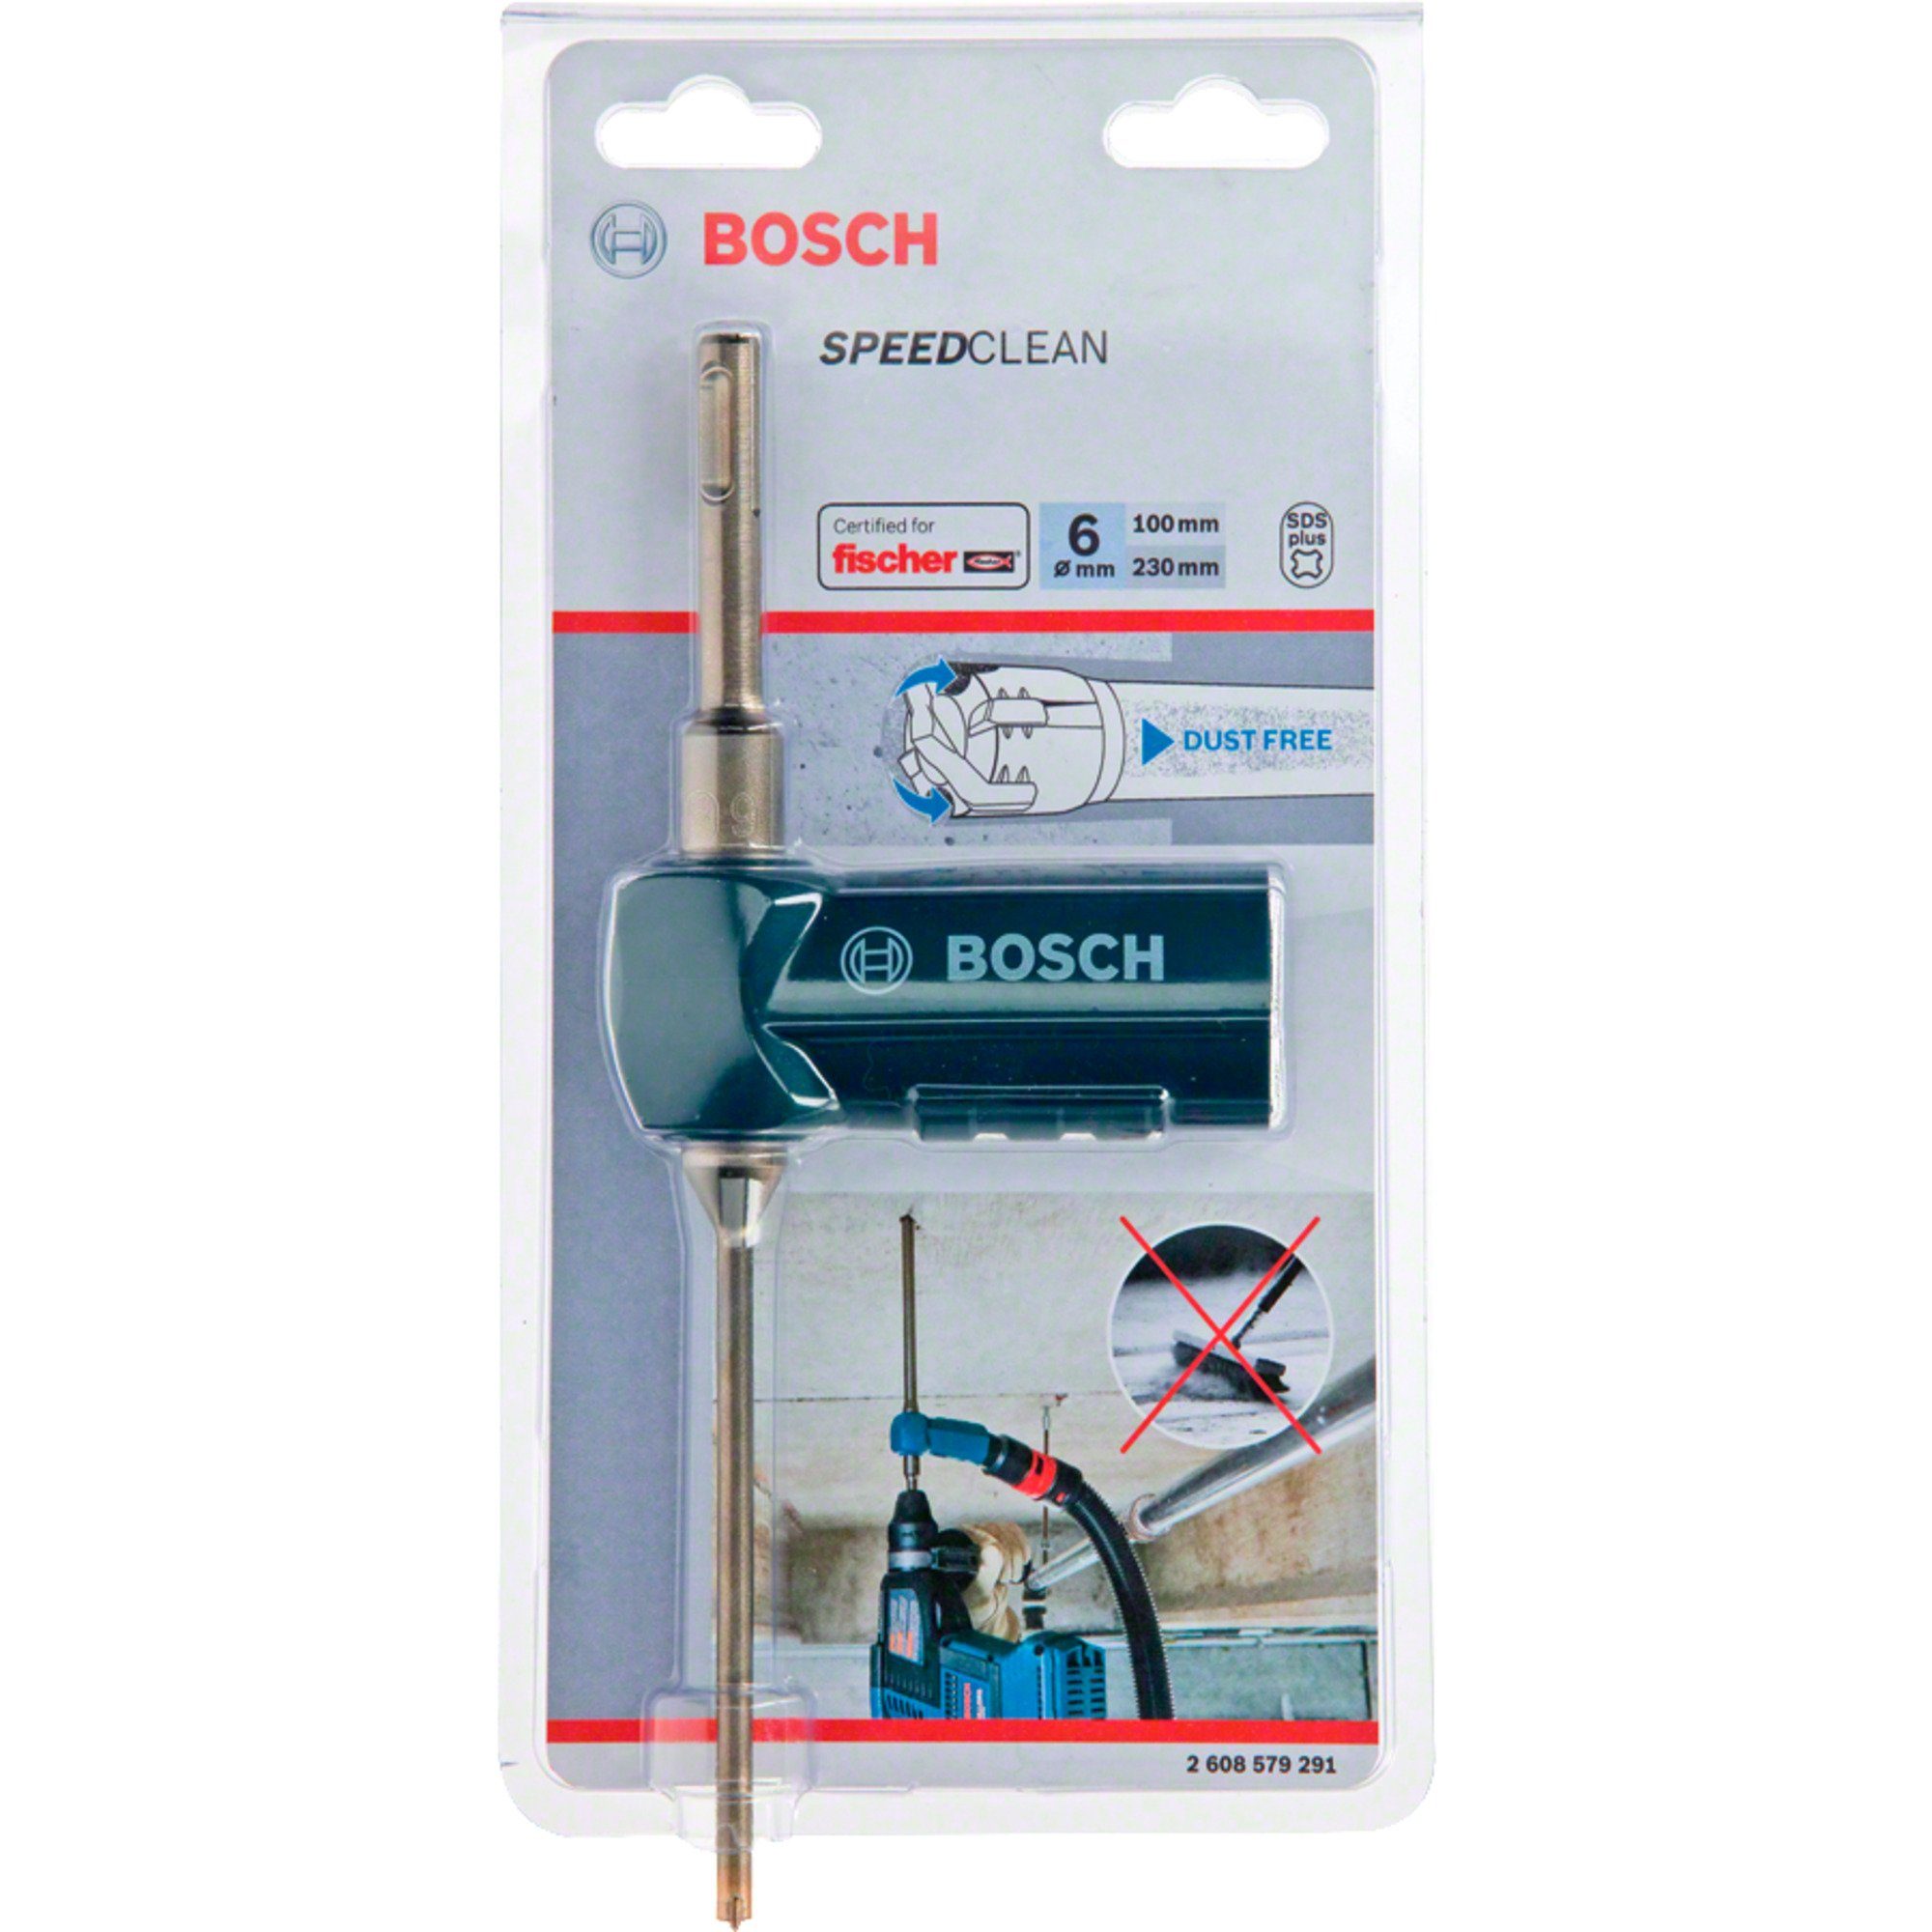 Professional Saugbohrer plus-9 SDS Bosch und Speed Bitset BOSCH Bohrer-